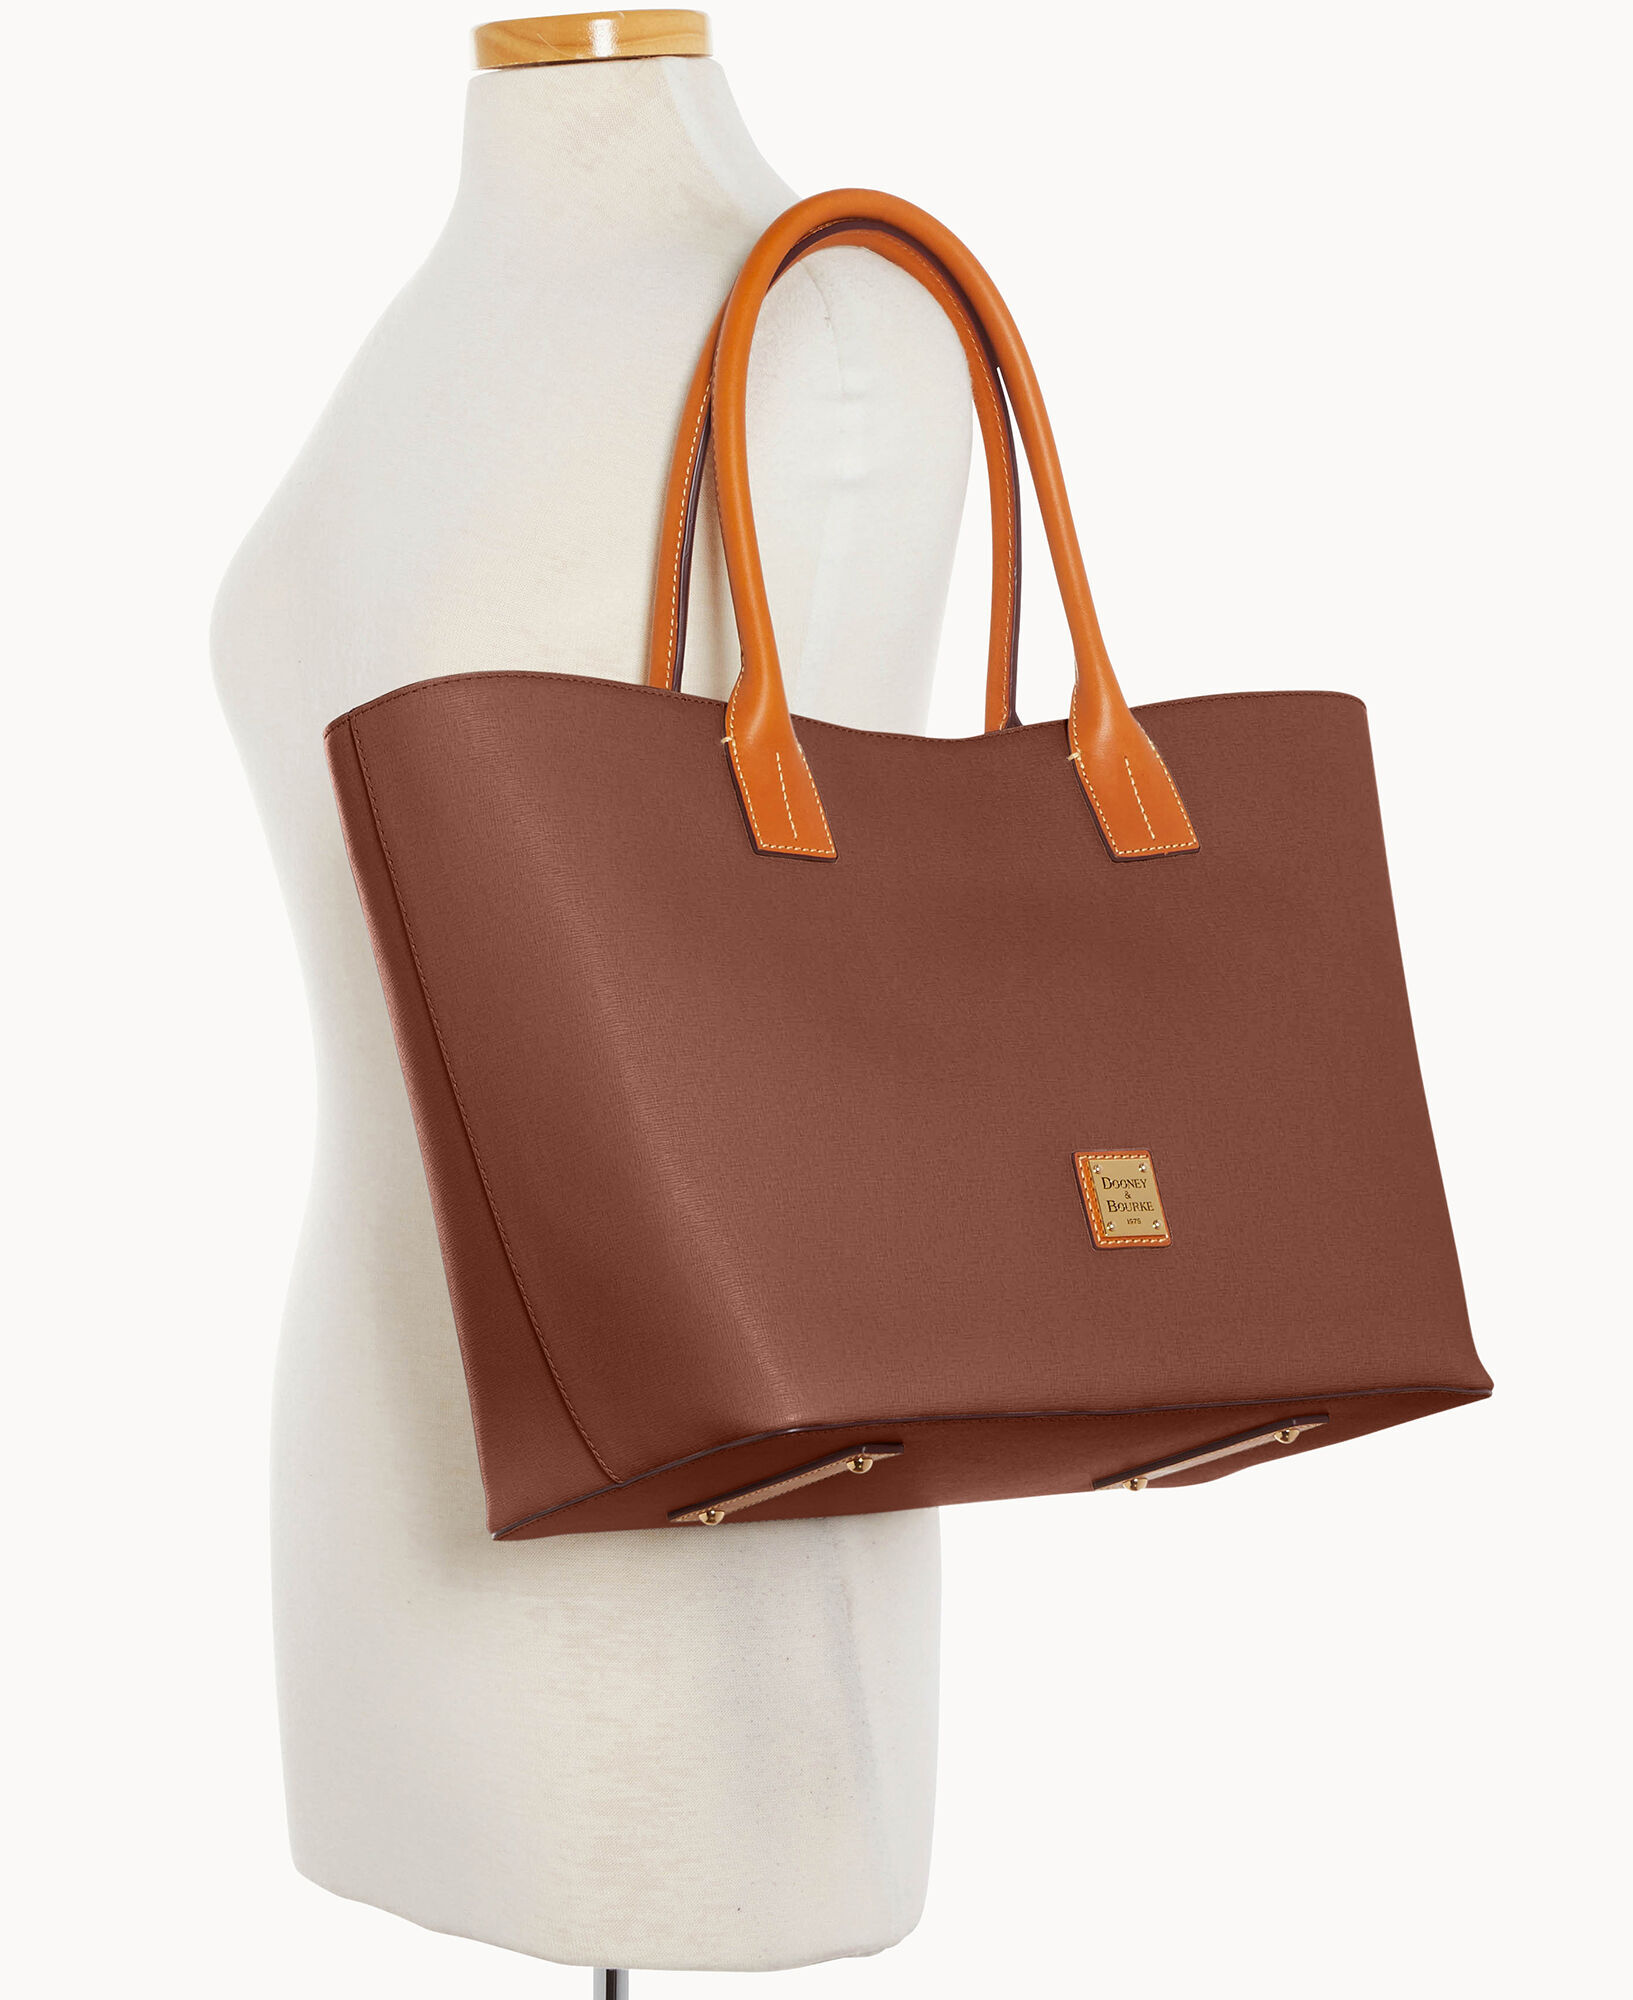  Dooney & Bourke Handbag, Saffiano Shopper Tote - Amber